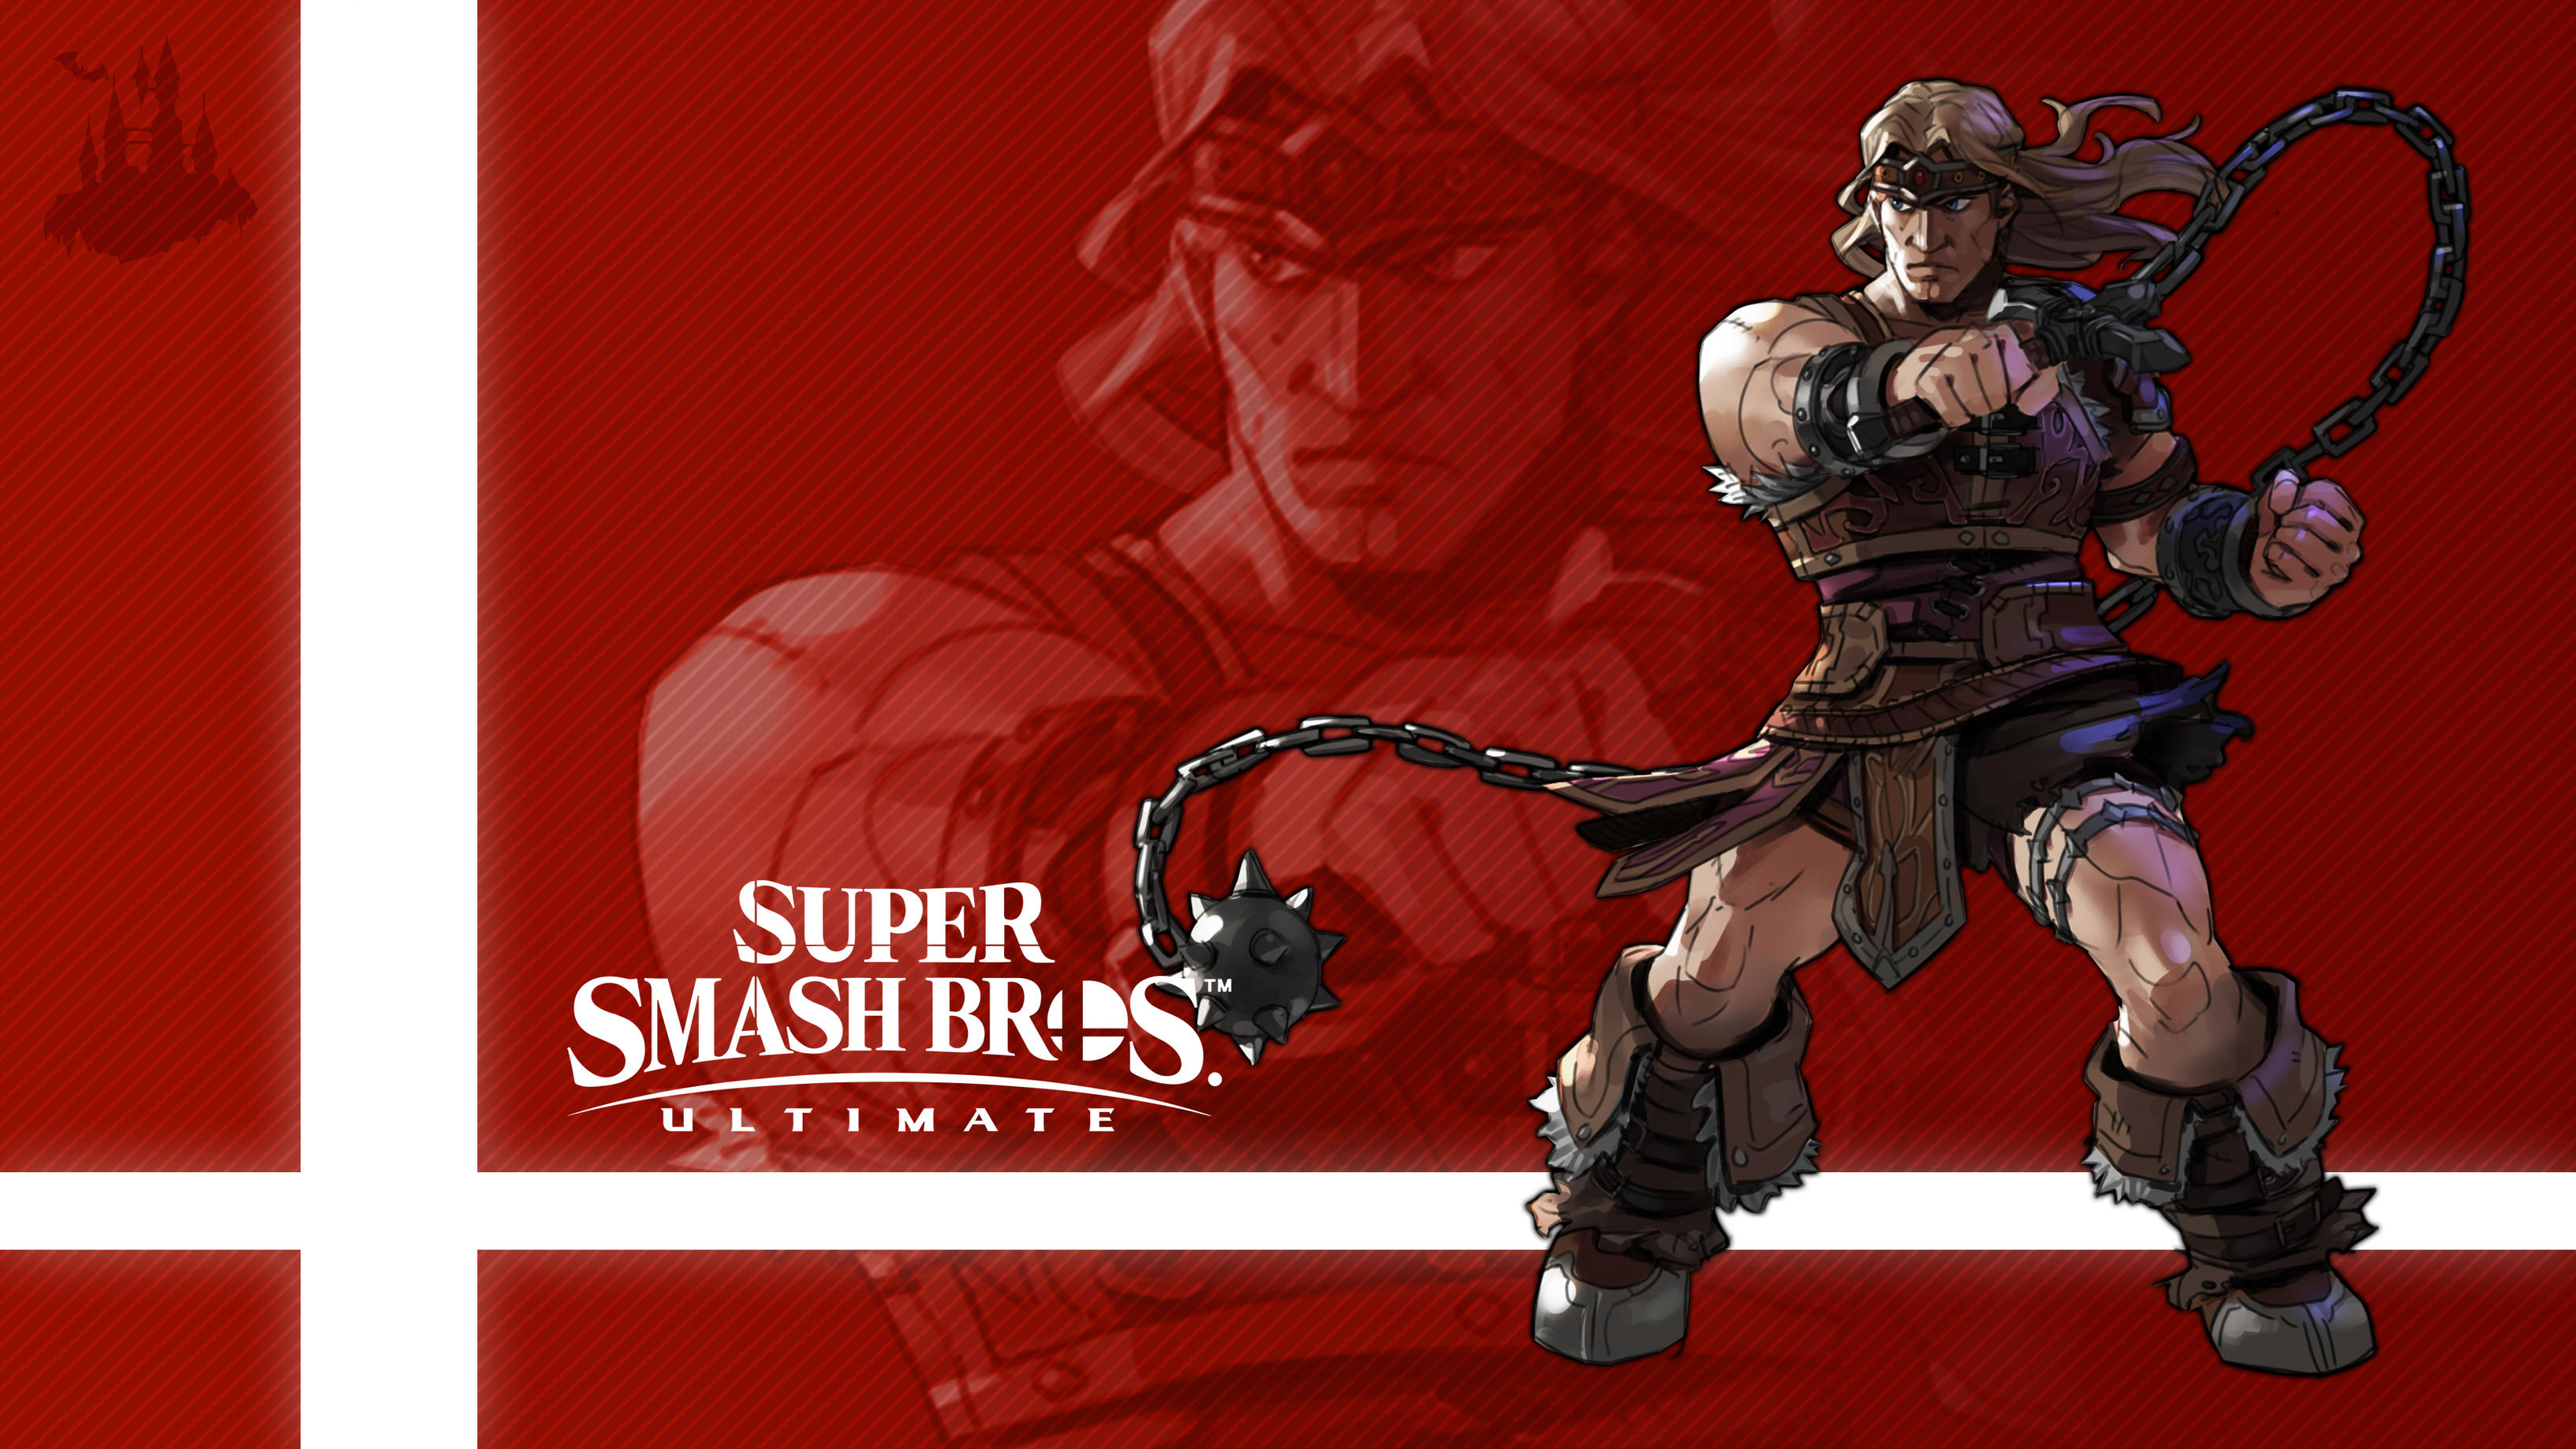 Simon In Super Smash Bros. Ultimate by Callum Nakajima